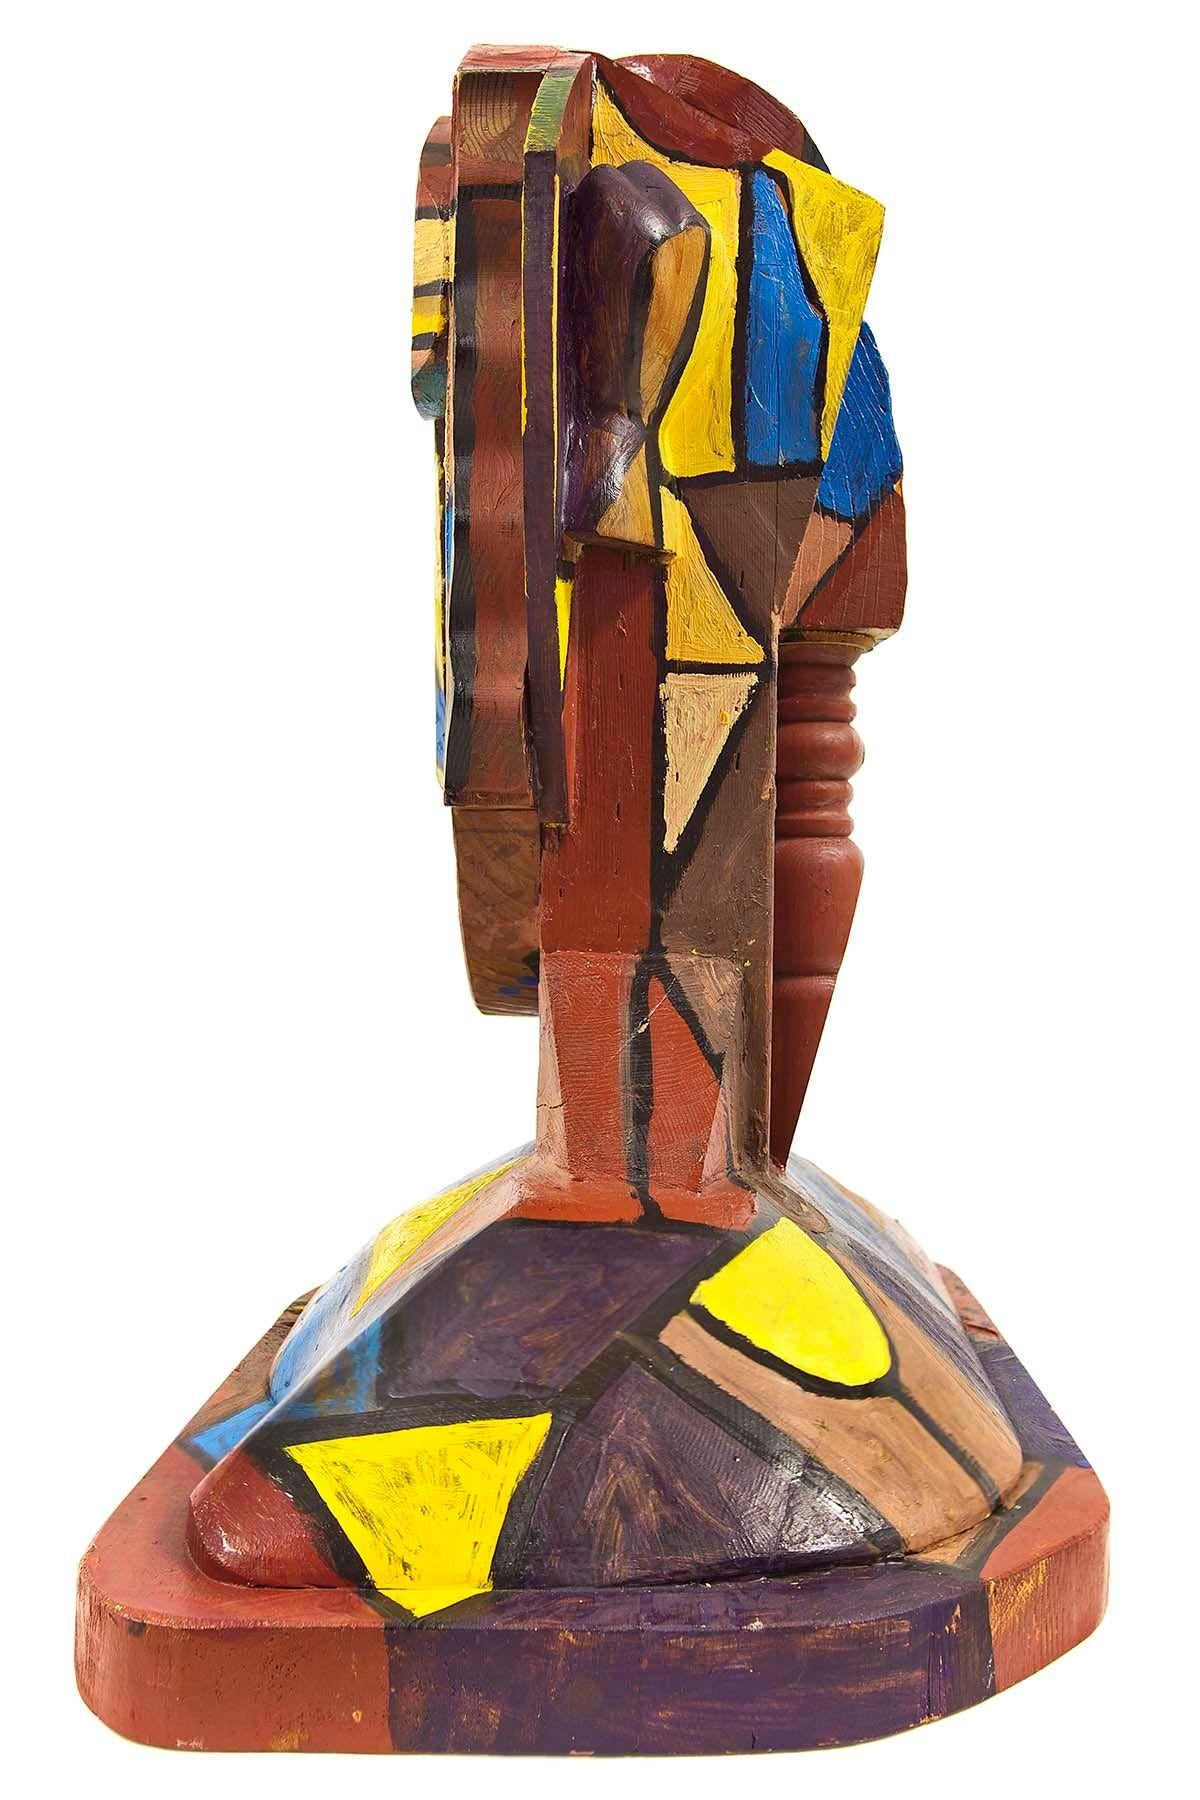 Tête de sculpture en bois peint, géométrique abstraite et cubiste, art néo- figuratif italien - Sculpture de Italo Scanga